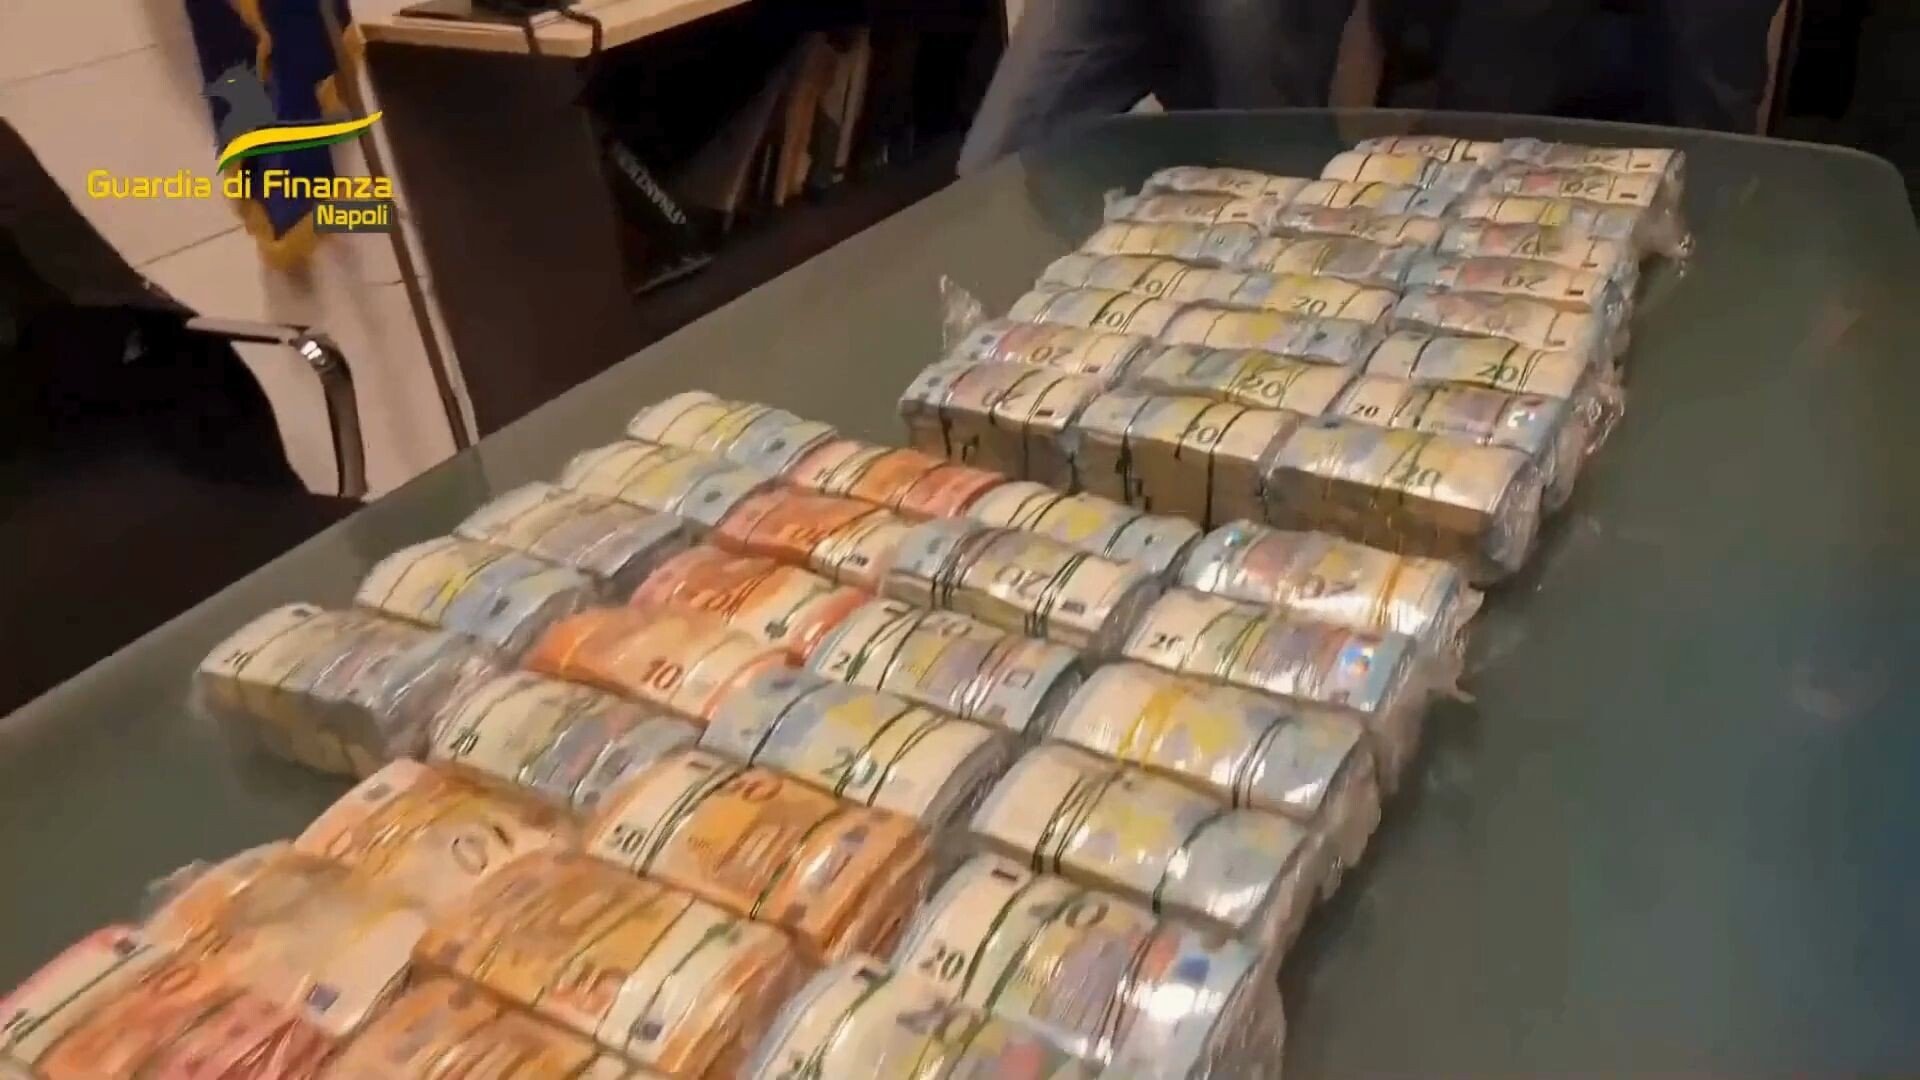 Riciclaggio: broker con caveau per nascondere soldi a Portici ed Ercolano